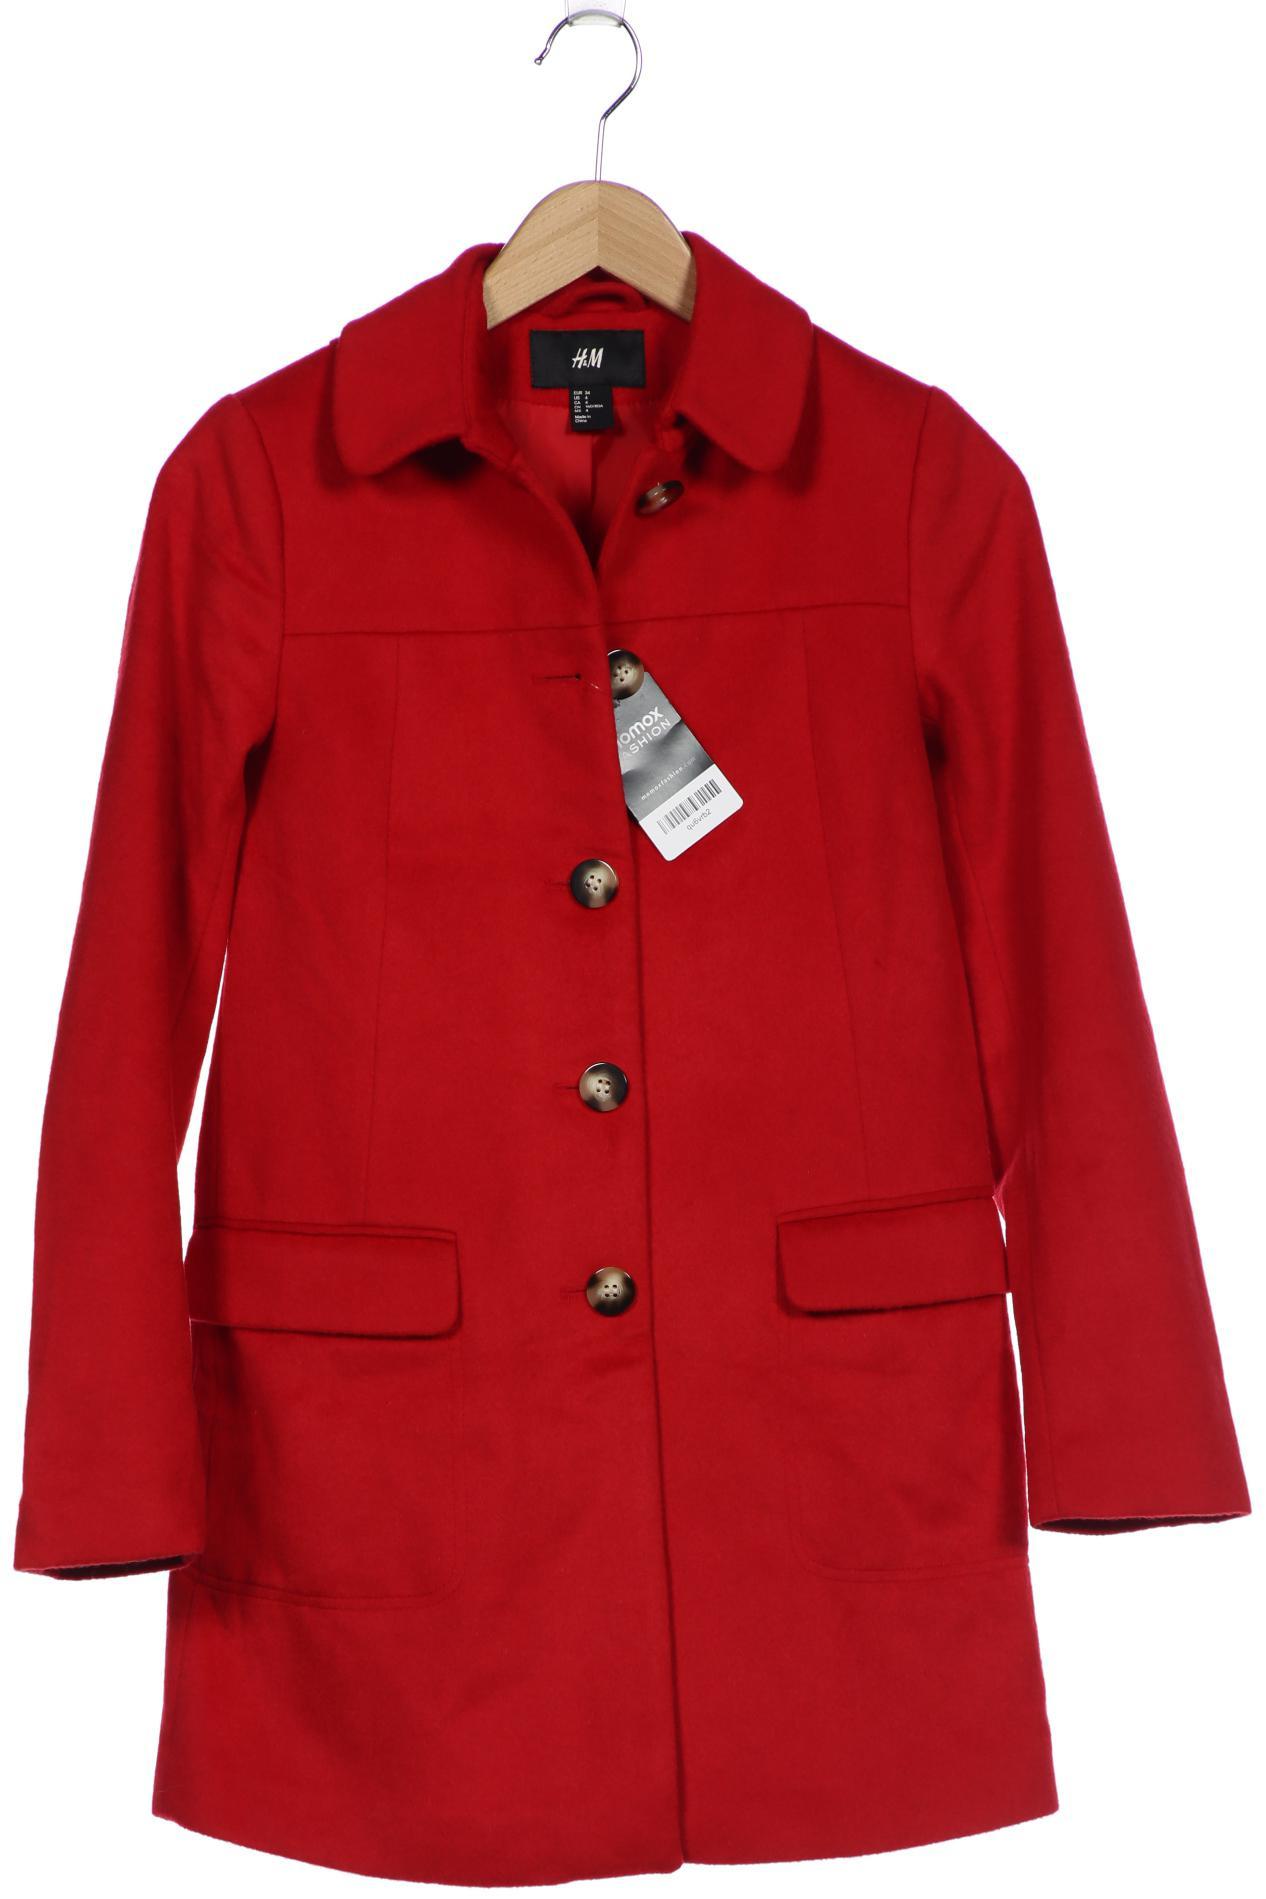 H&M Damen Mantel, rot von H&M